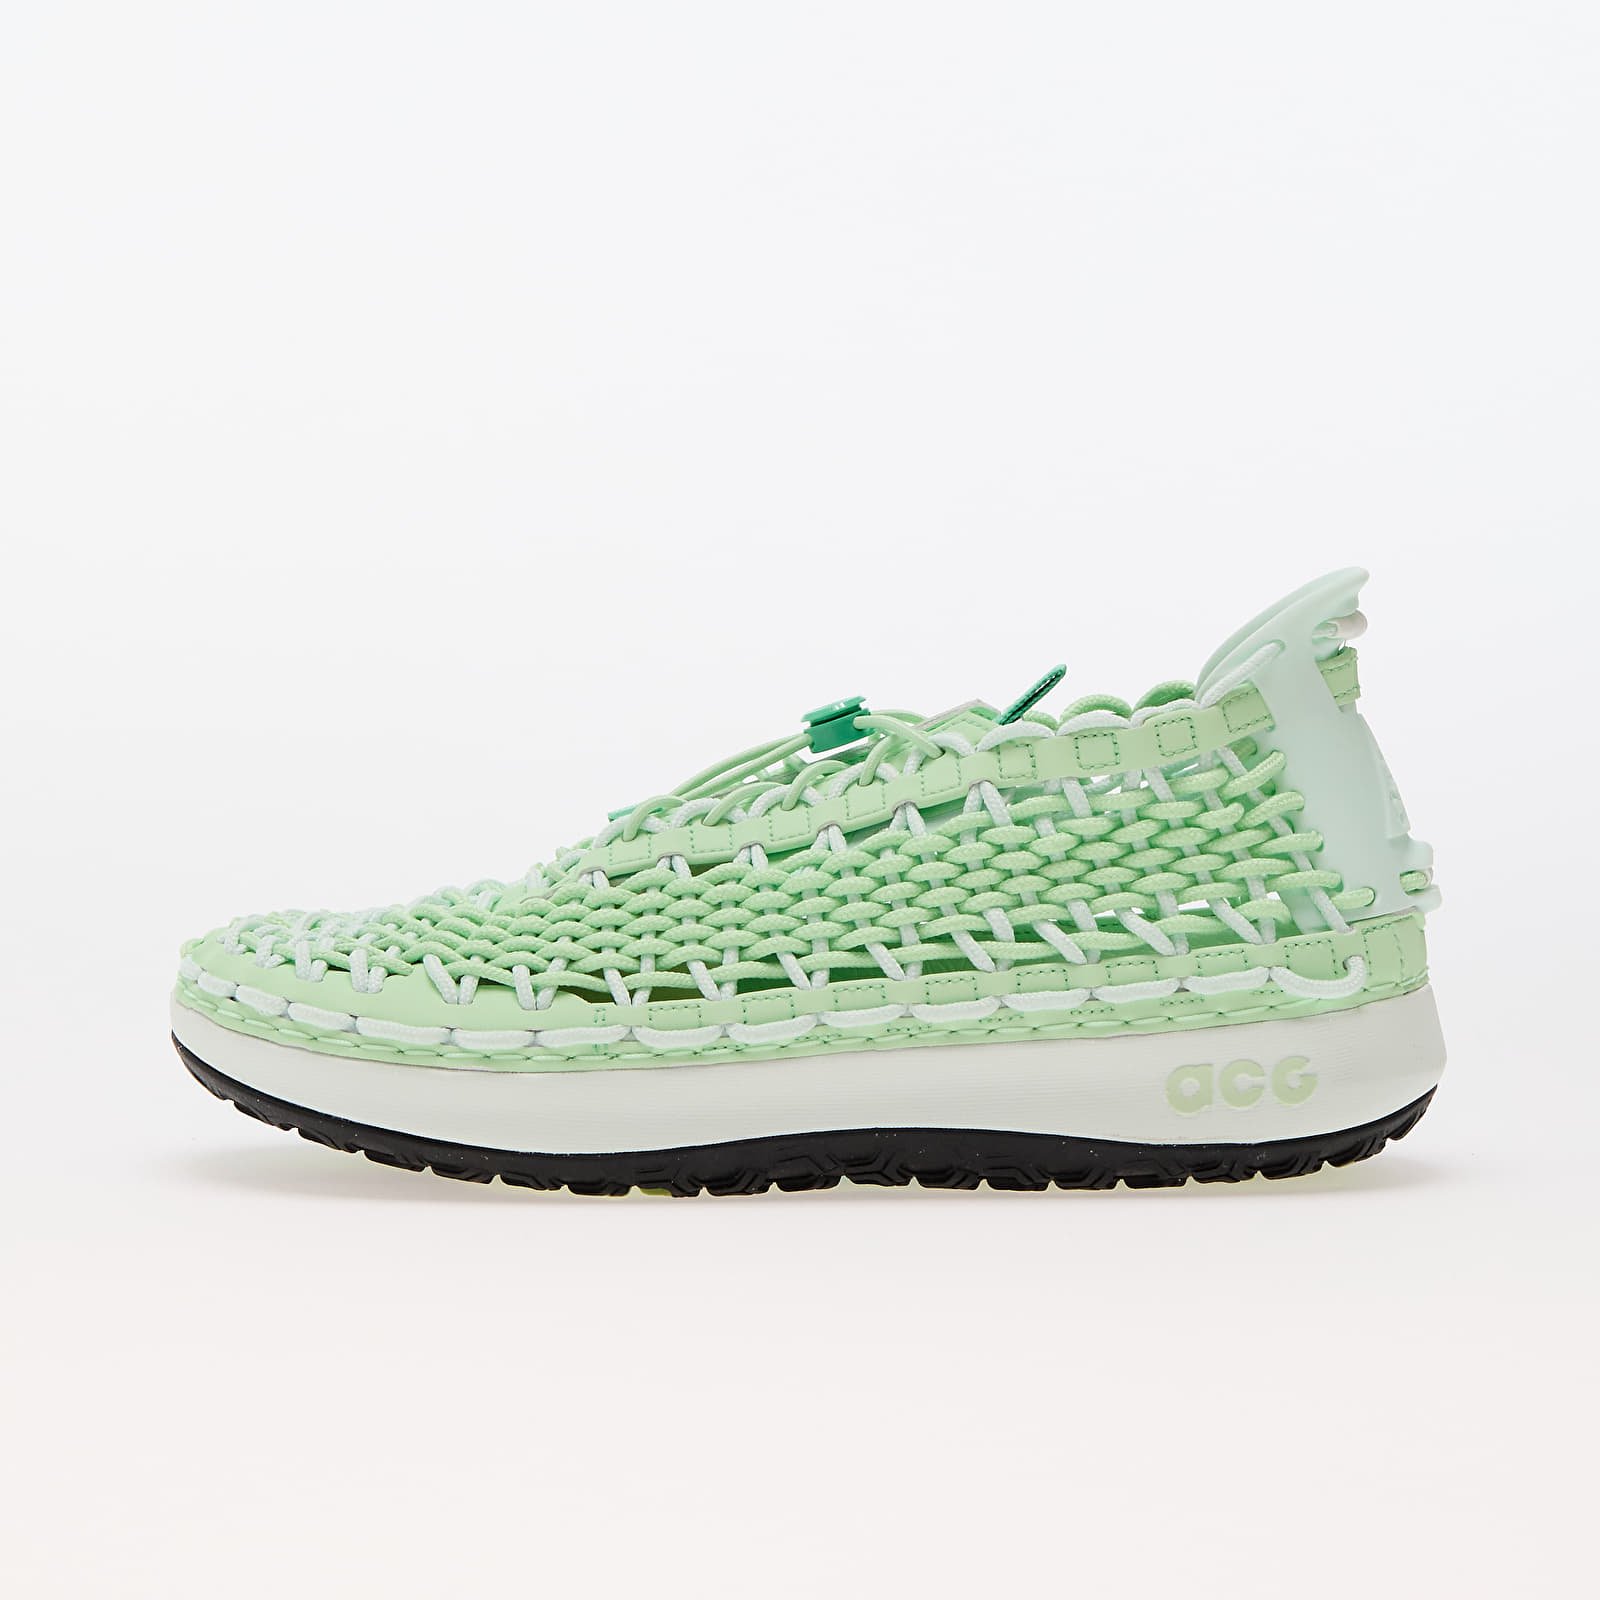 Încălțăminte și sneakerși pentru bărbați Nike Acg Watercat+ Vapor Green/ Vapor Green-Barely Green